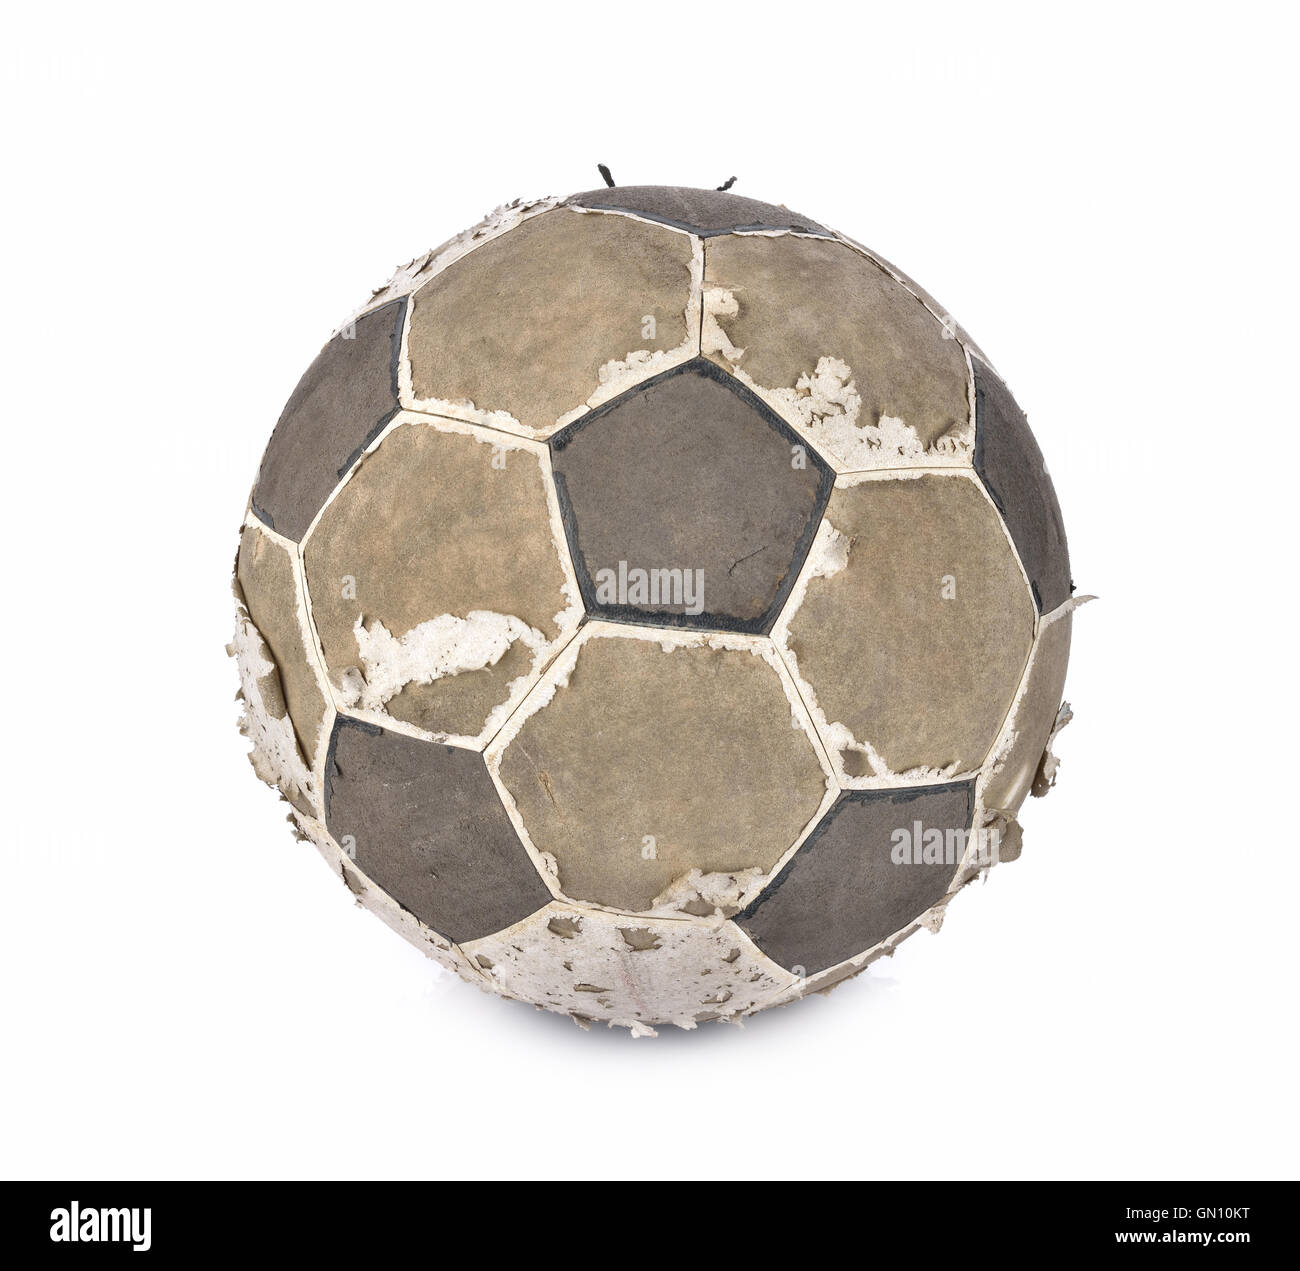 Vecchio Pallone da calcio isolati su sfondo bianco Foto stock - Alamy